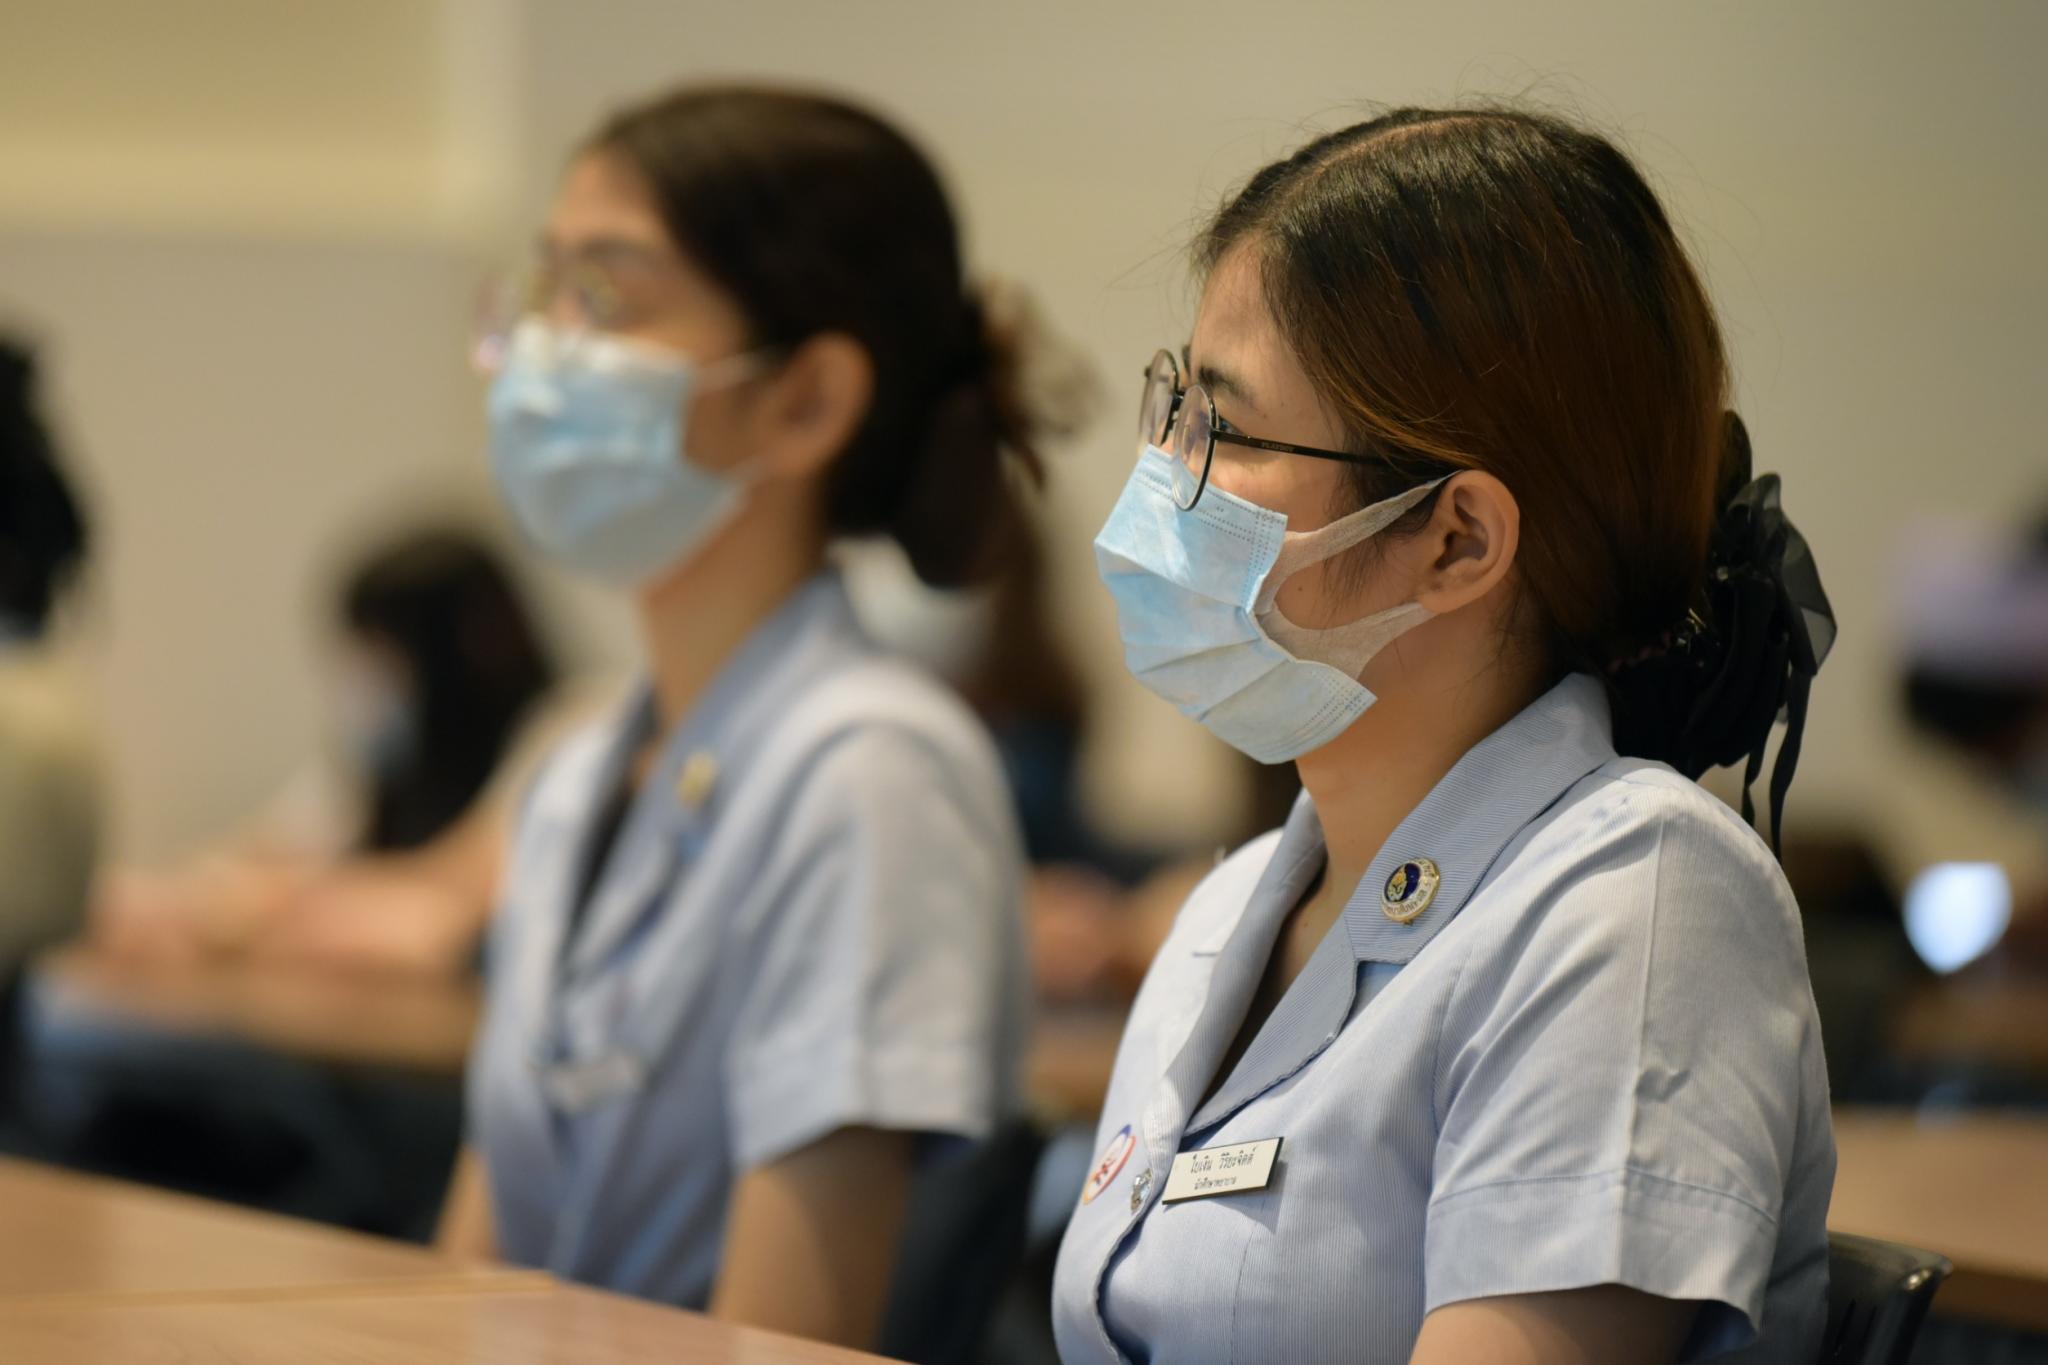 แถลงข่าว โรงเรียนพยาบาลรามาธิบดี คณะแพทยศาสตร์โรงพยาบาลรามาธิบดี มหาวิทยาลัยมหิดล สถาบันอุดมศึกษาต้นแบบเพื่อสังคมไทยปลอดบุหรี่